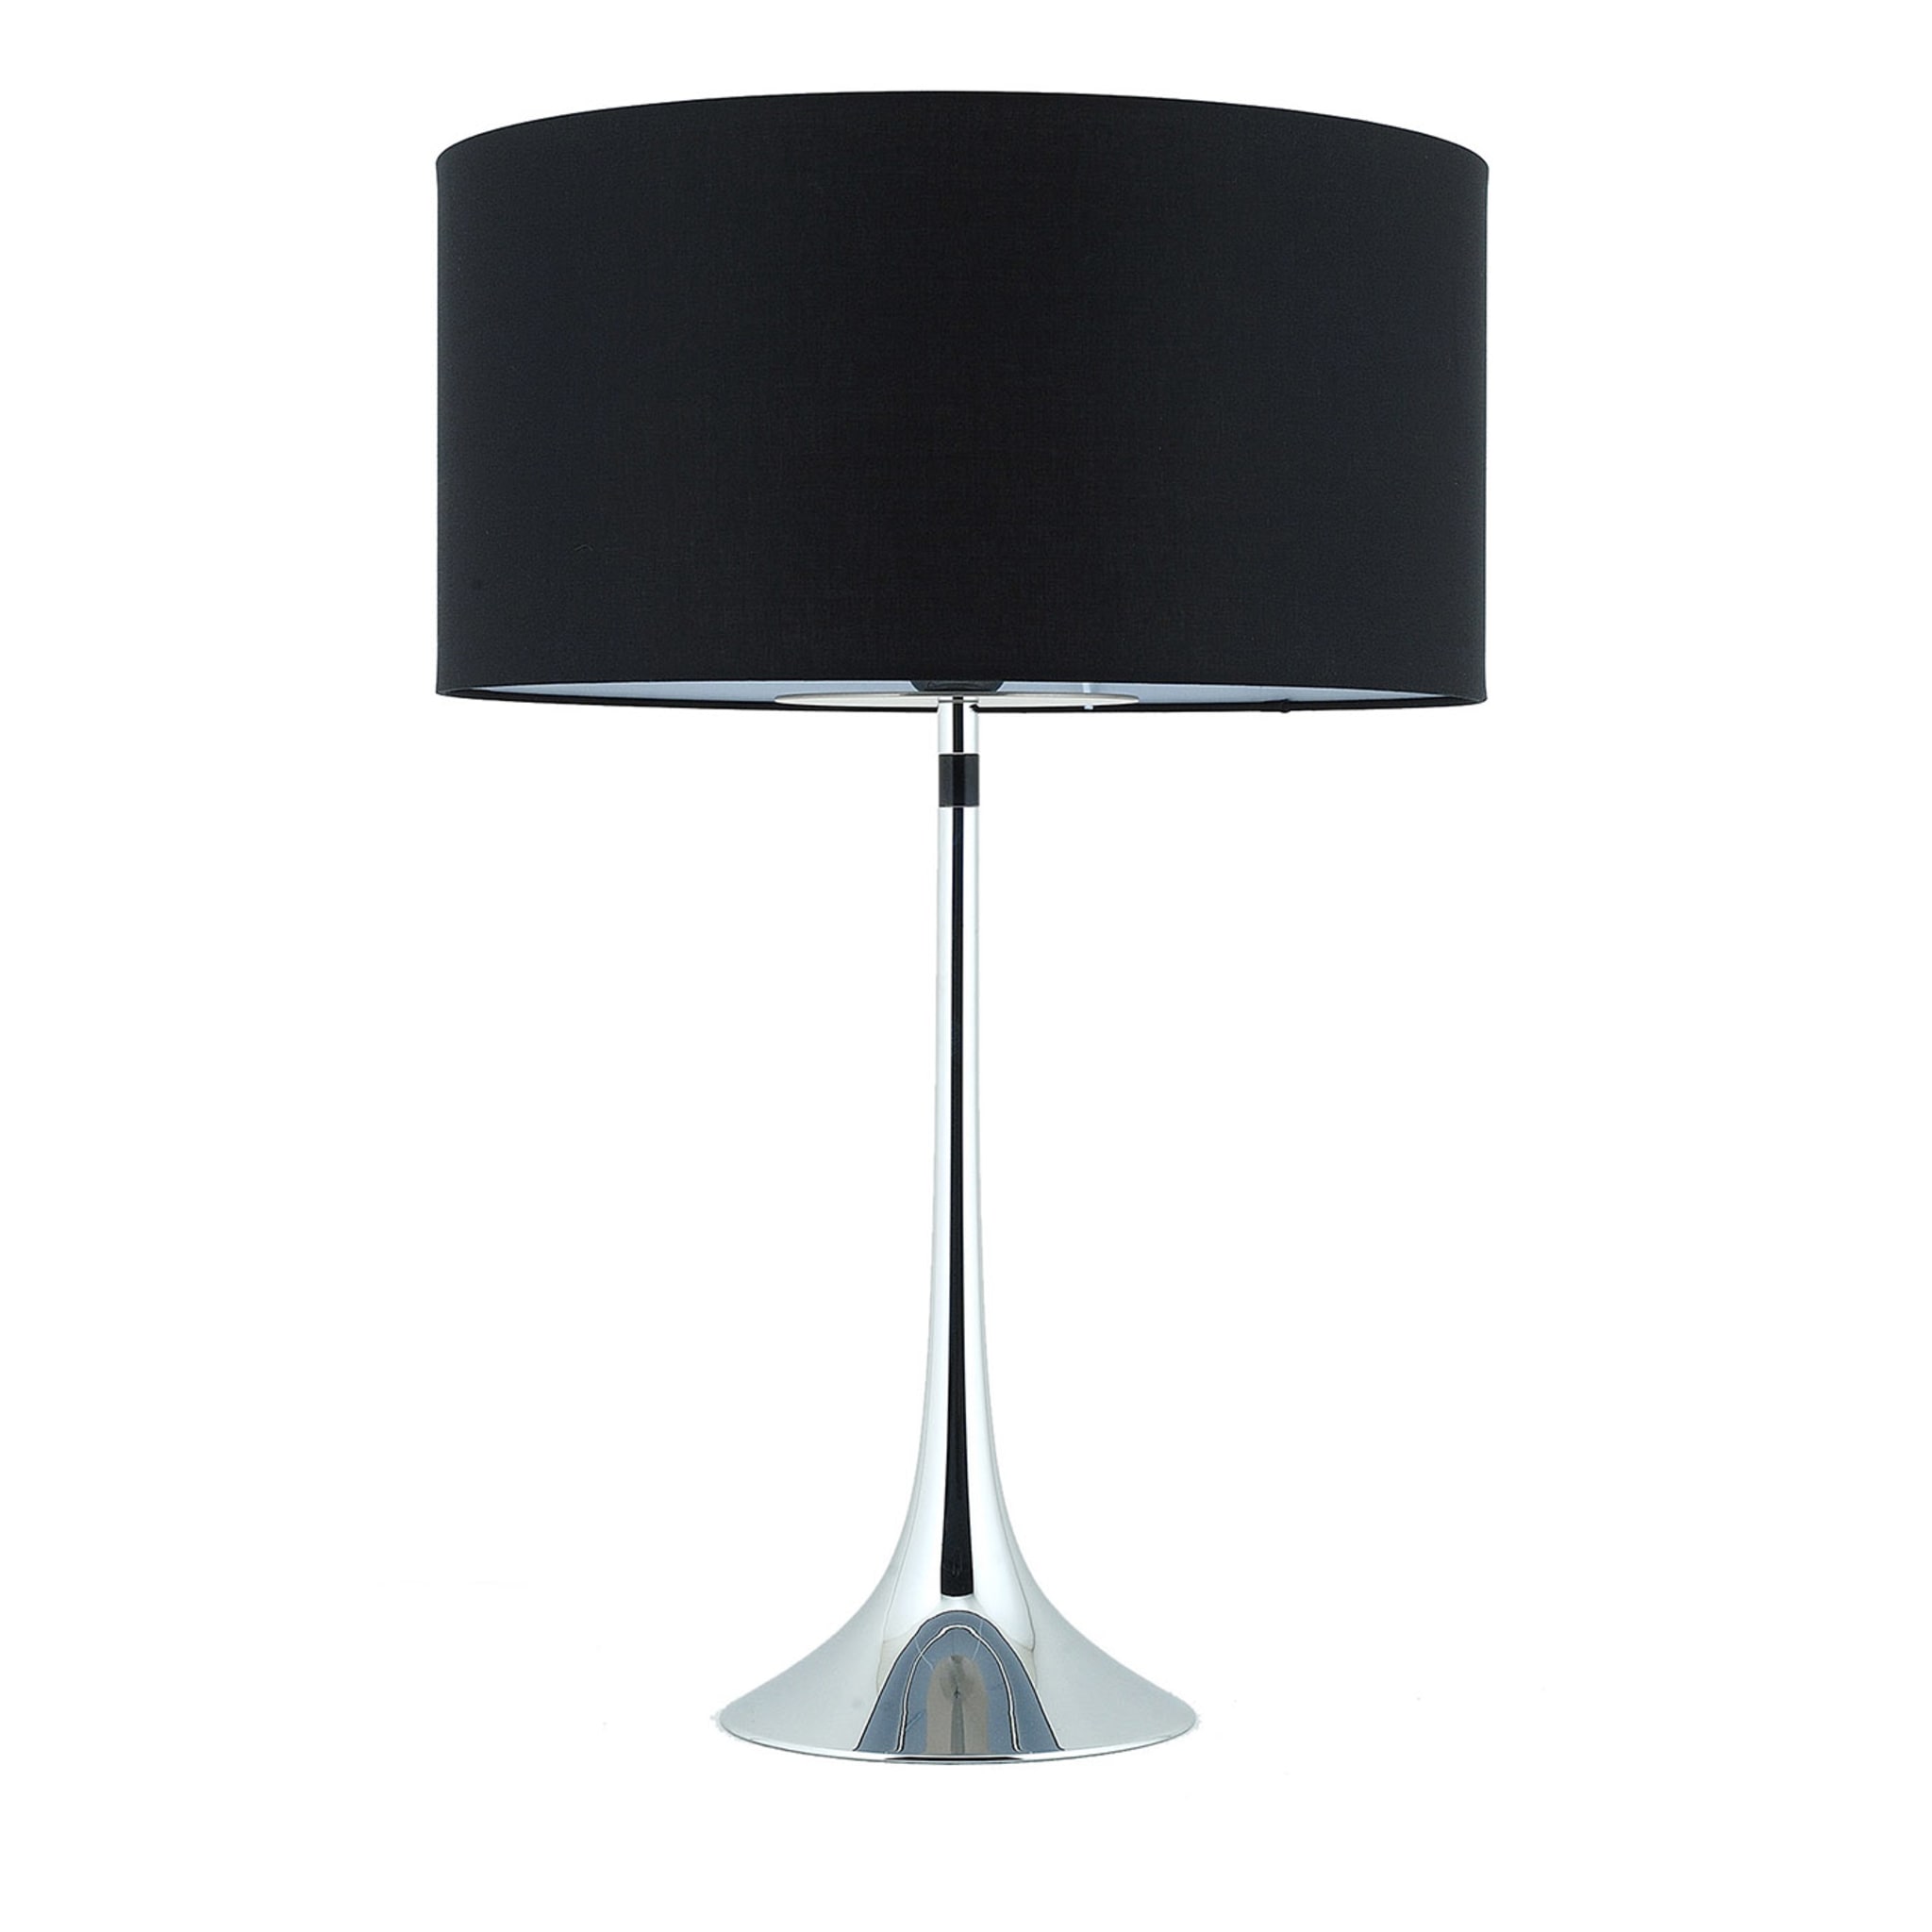 Vivien Large Black & Chrome Table Lamp - Main view